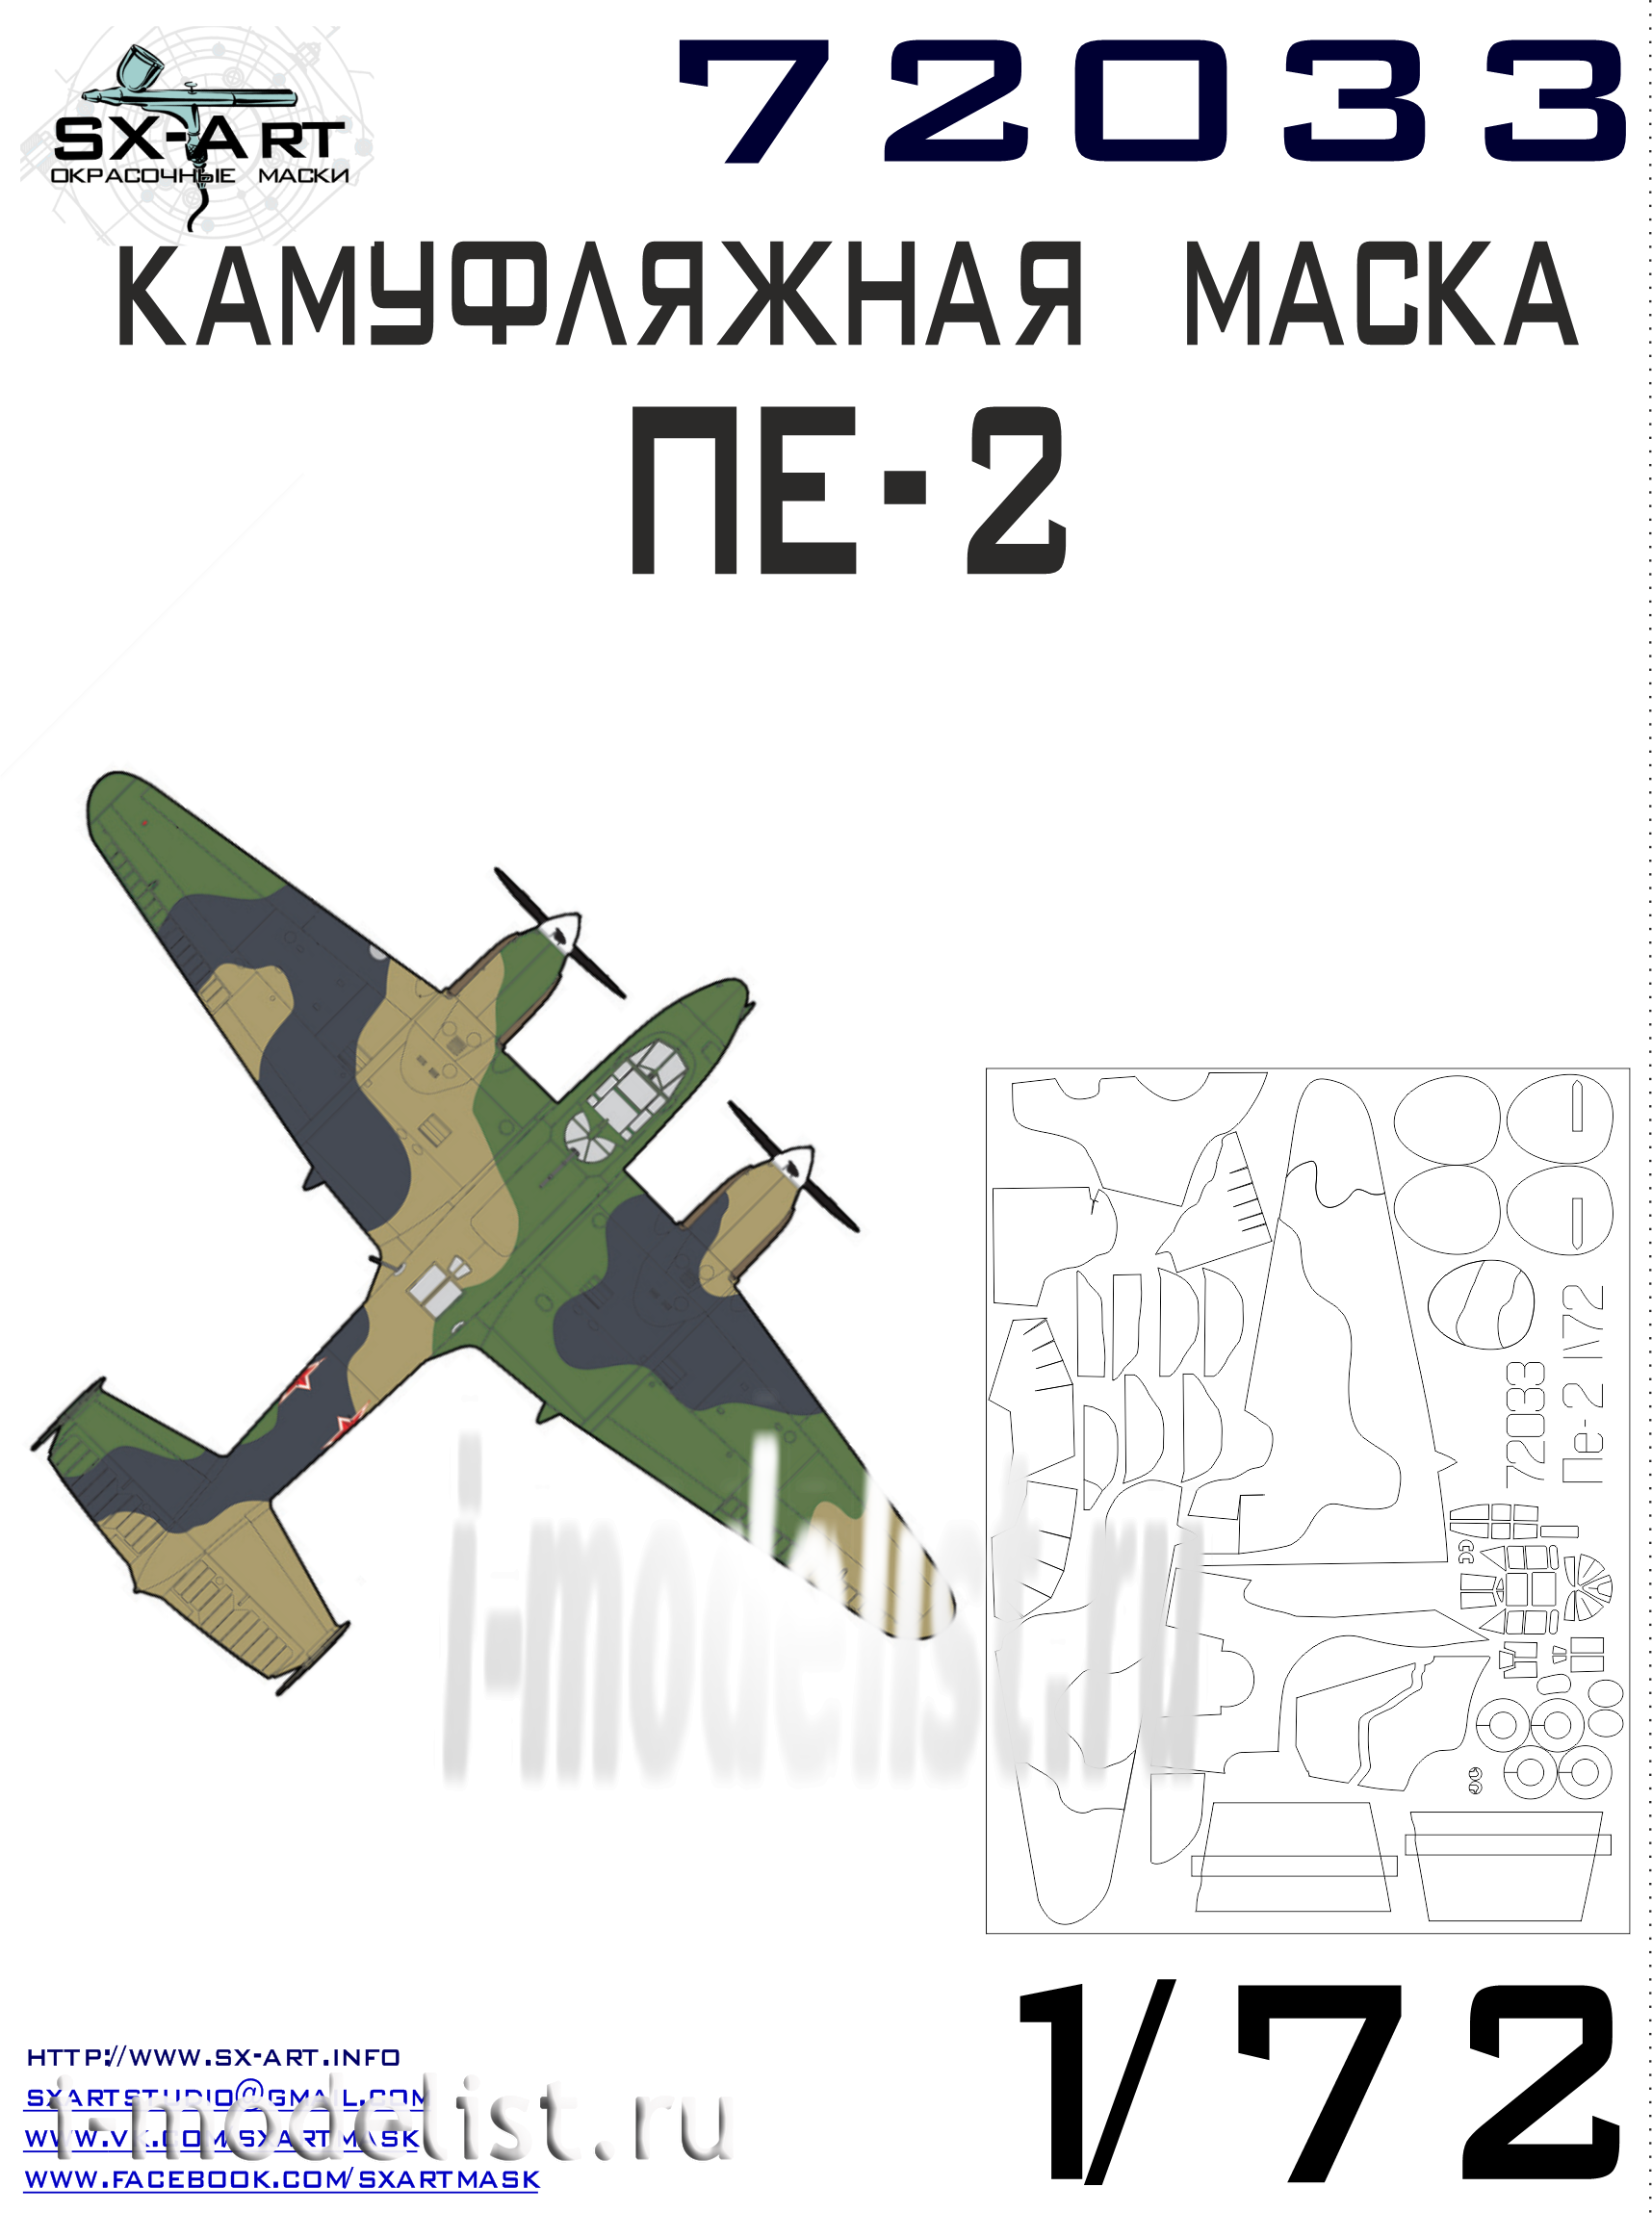 SX72033 Camouflage mask Pe-2 (Zvezda)